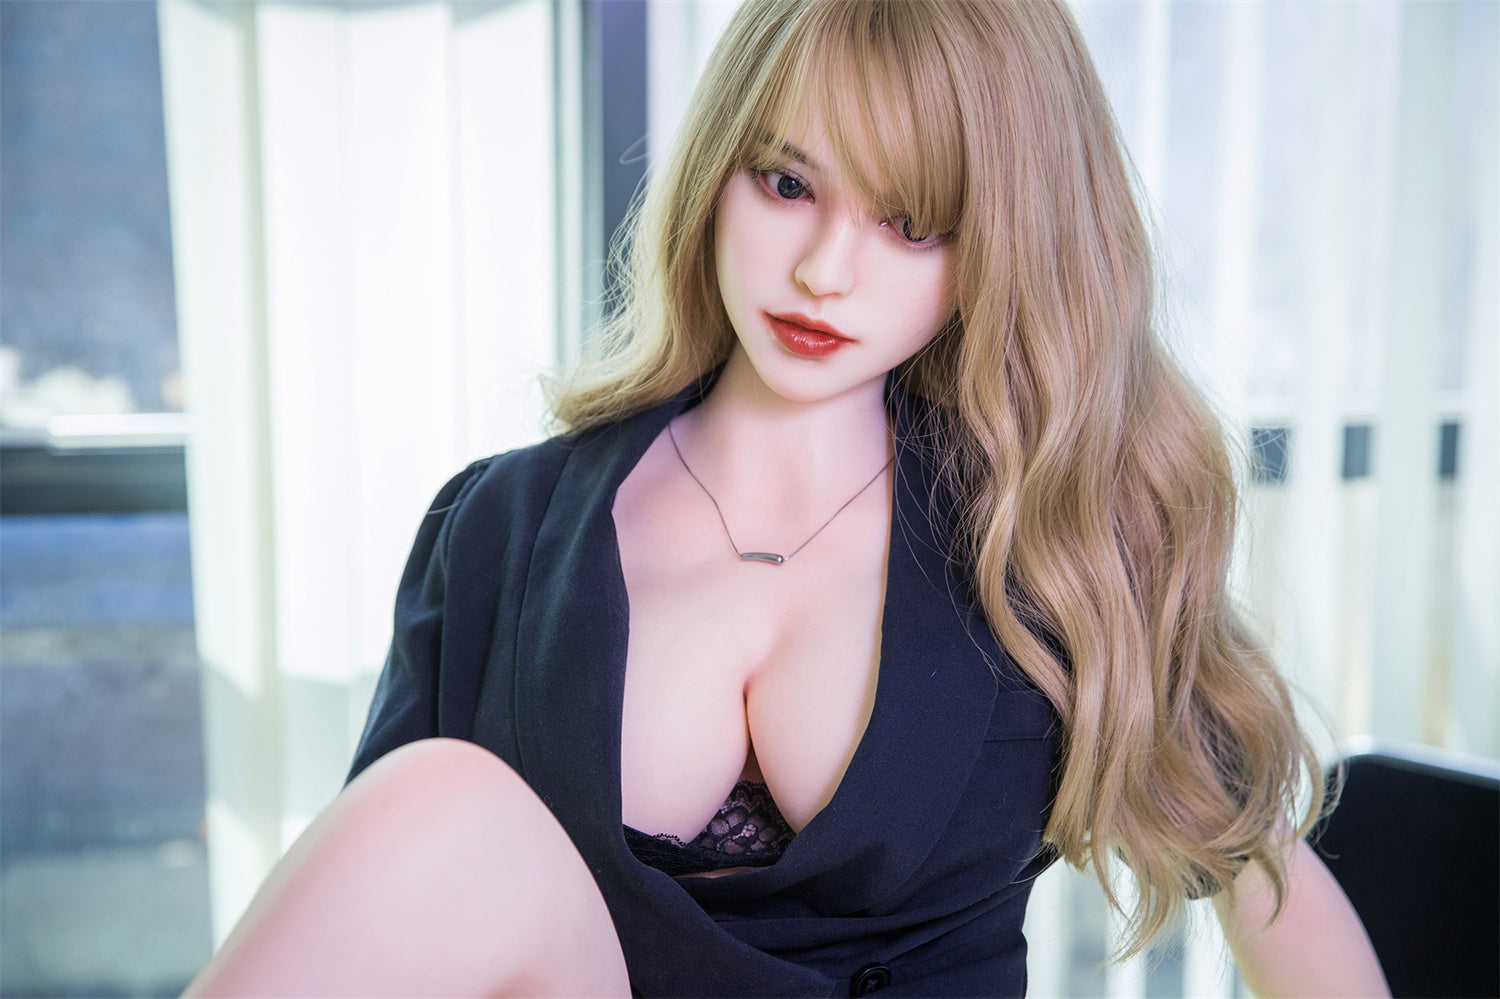 QITA Doll 164 cm Silicone - Joanna | Sex Dolls SG